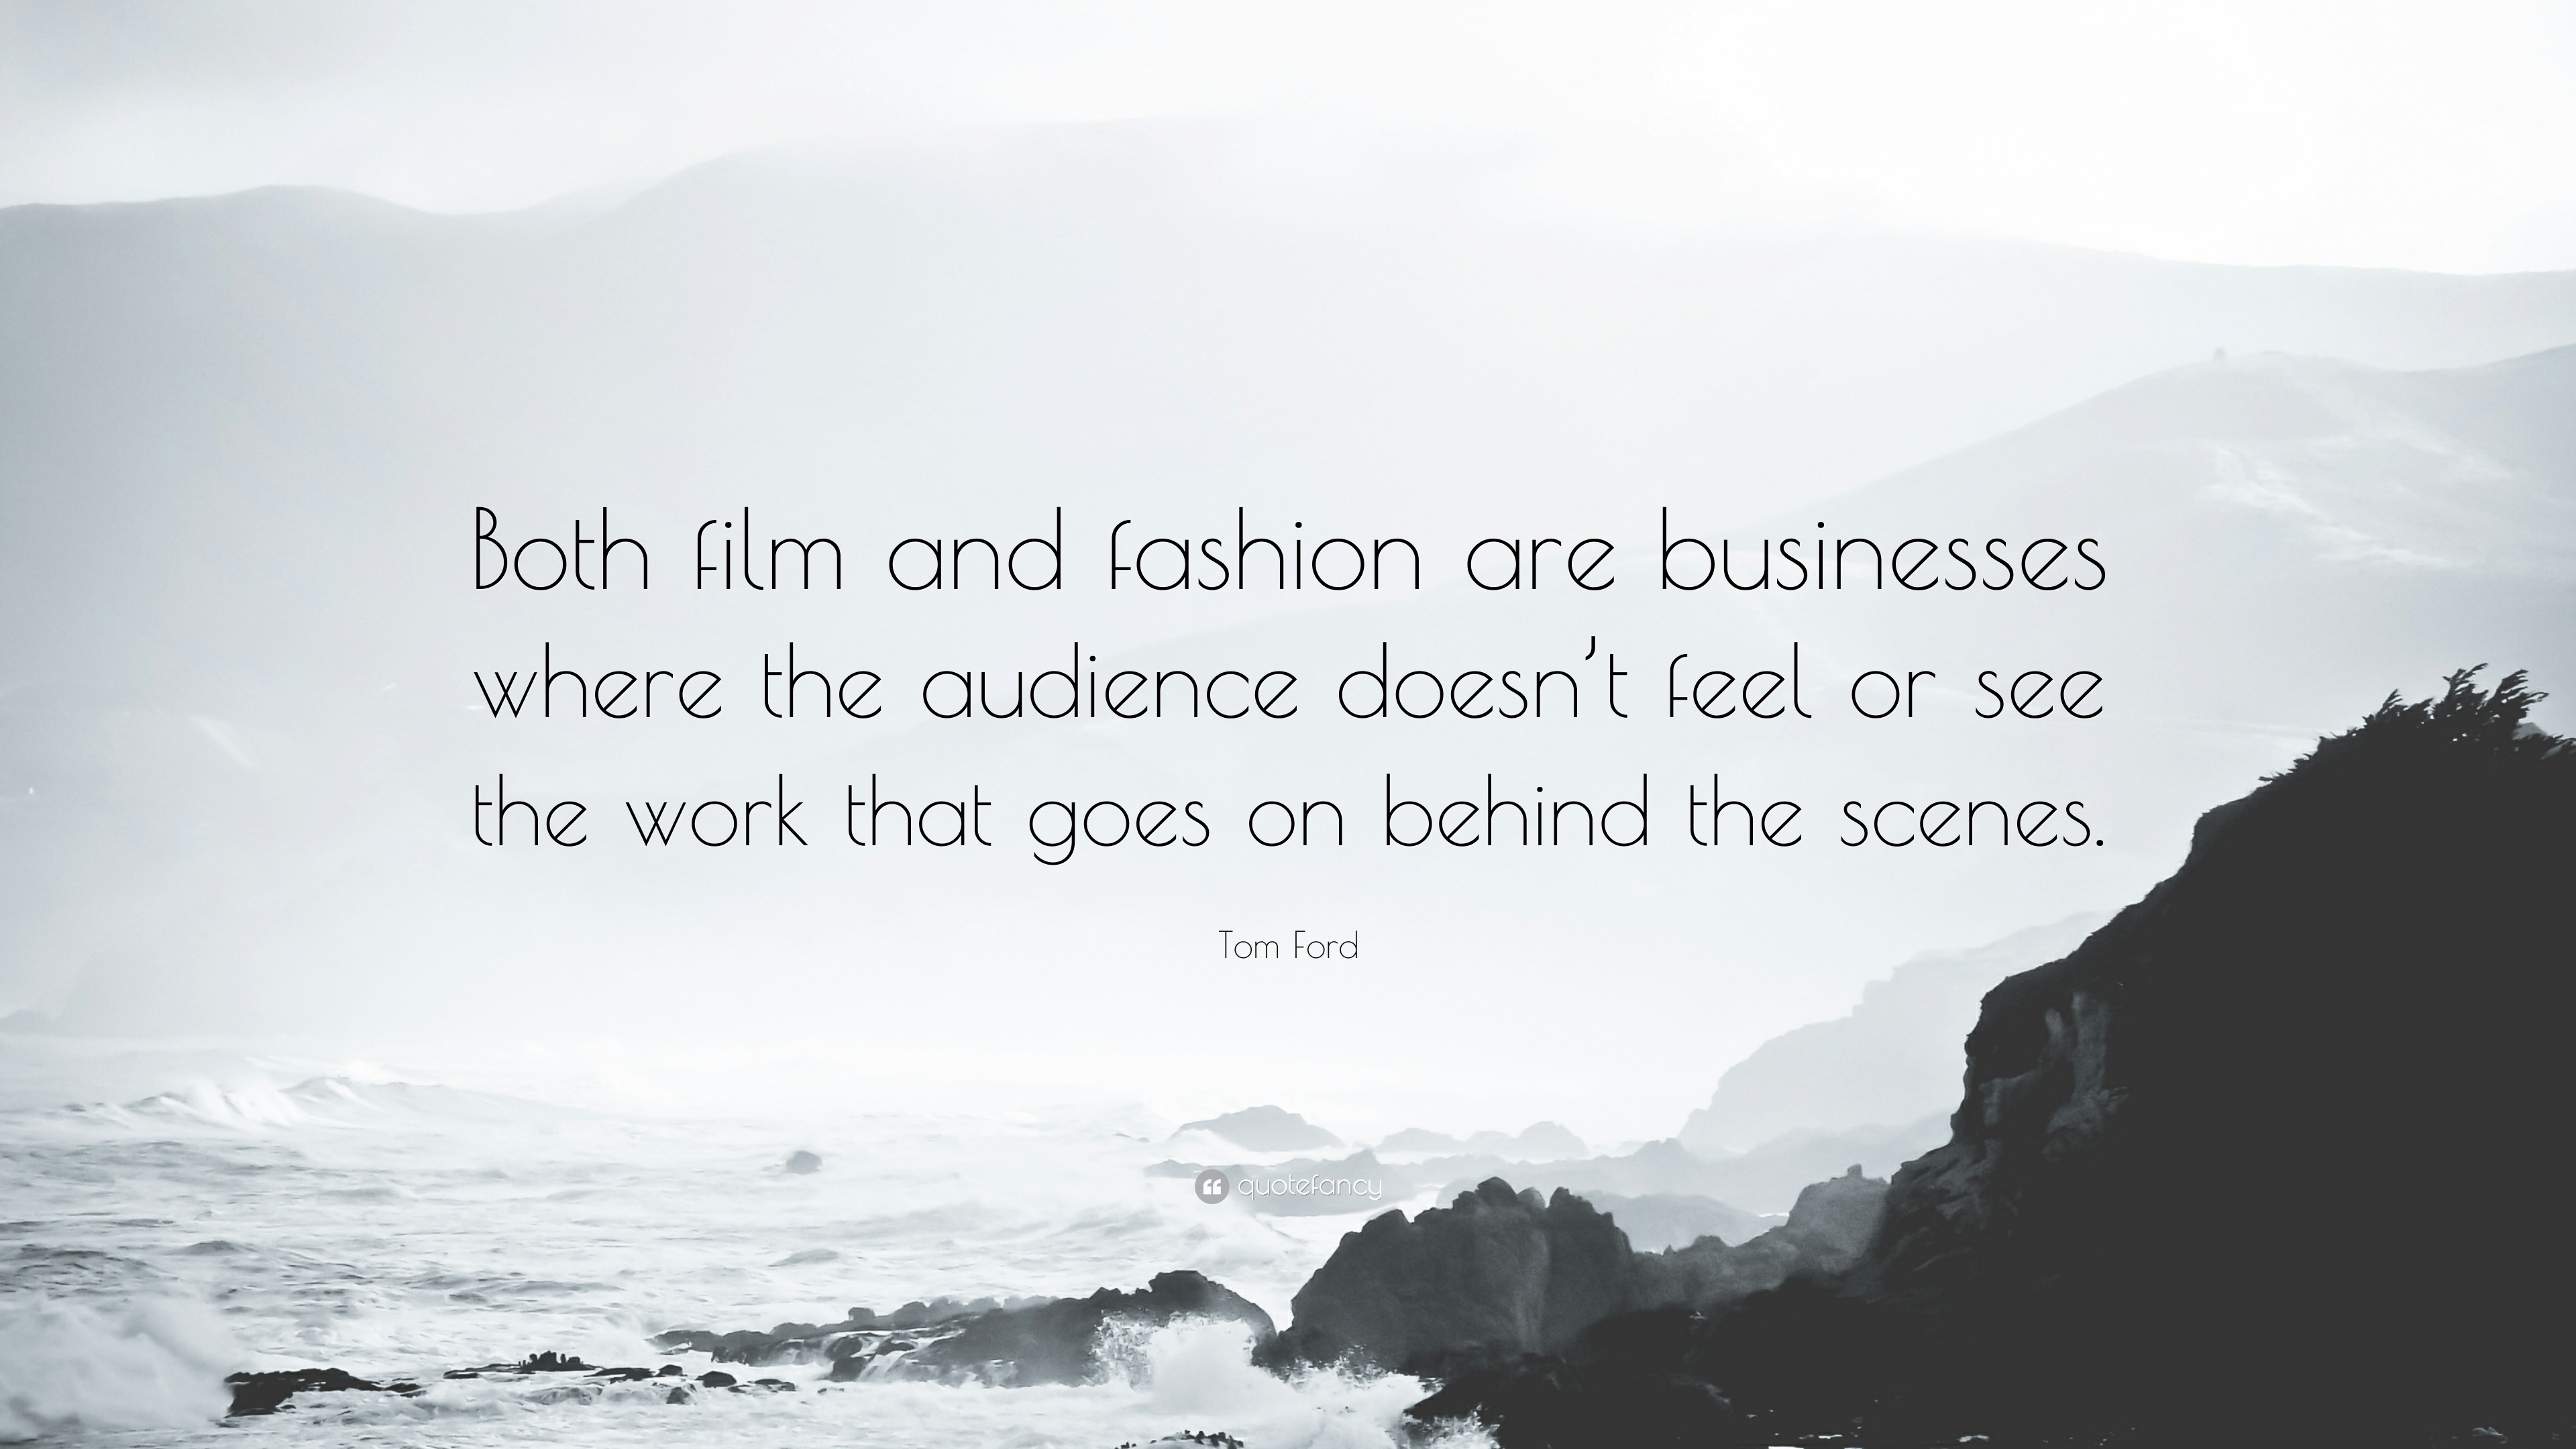 Tom Ford - Career, Fashion & Movies